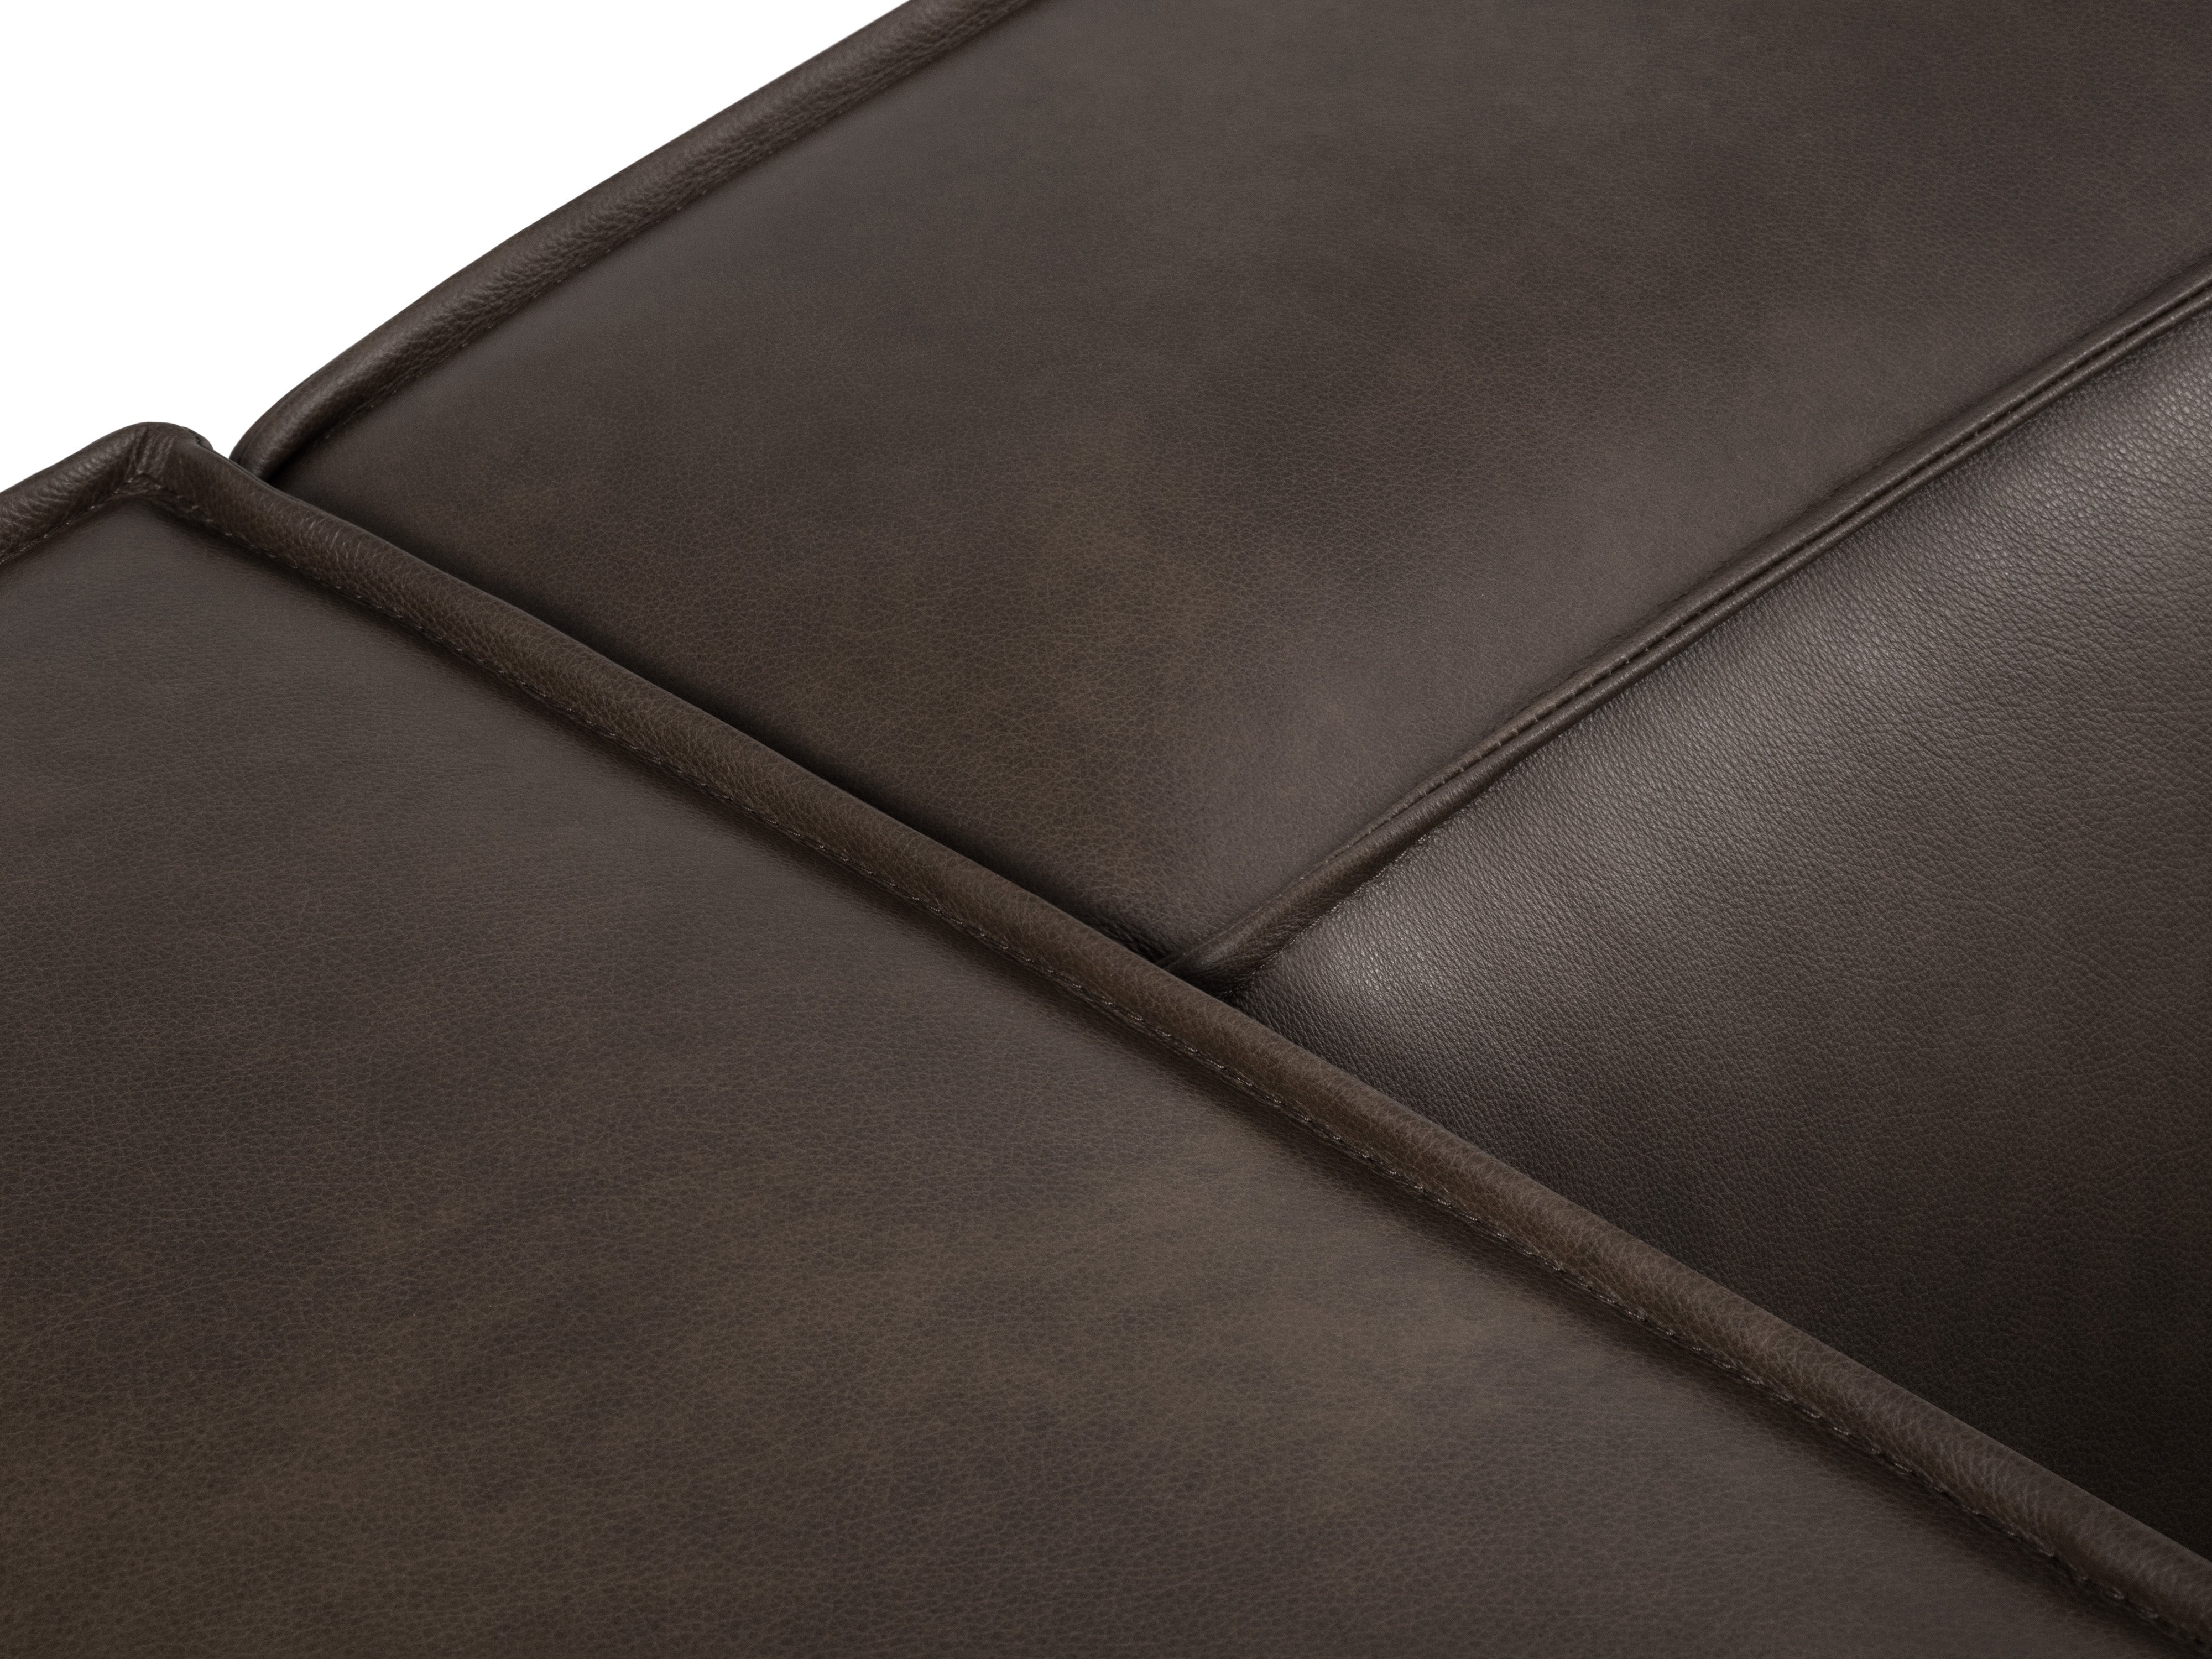 Sofa skórzana 2-osobowa MADAME oliwkowy brąz, Windsor & Co, Eye on Design